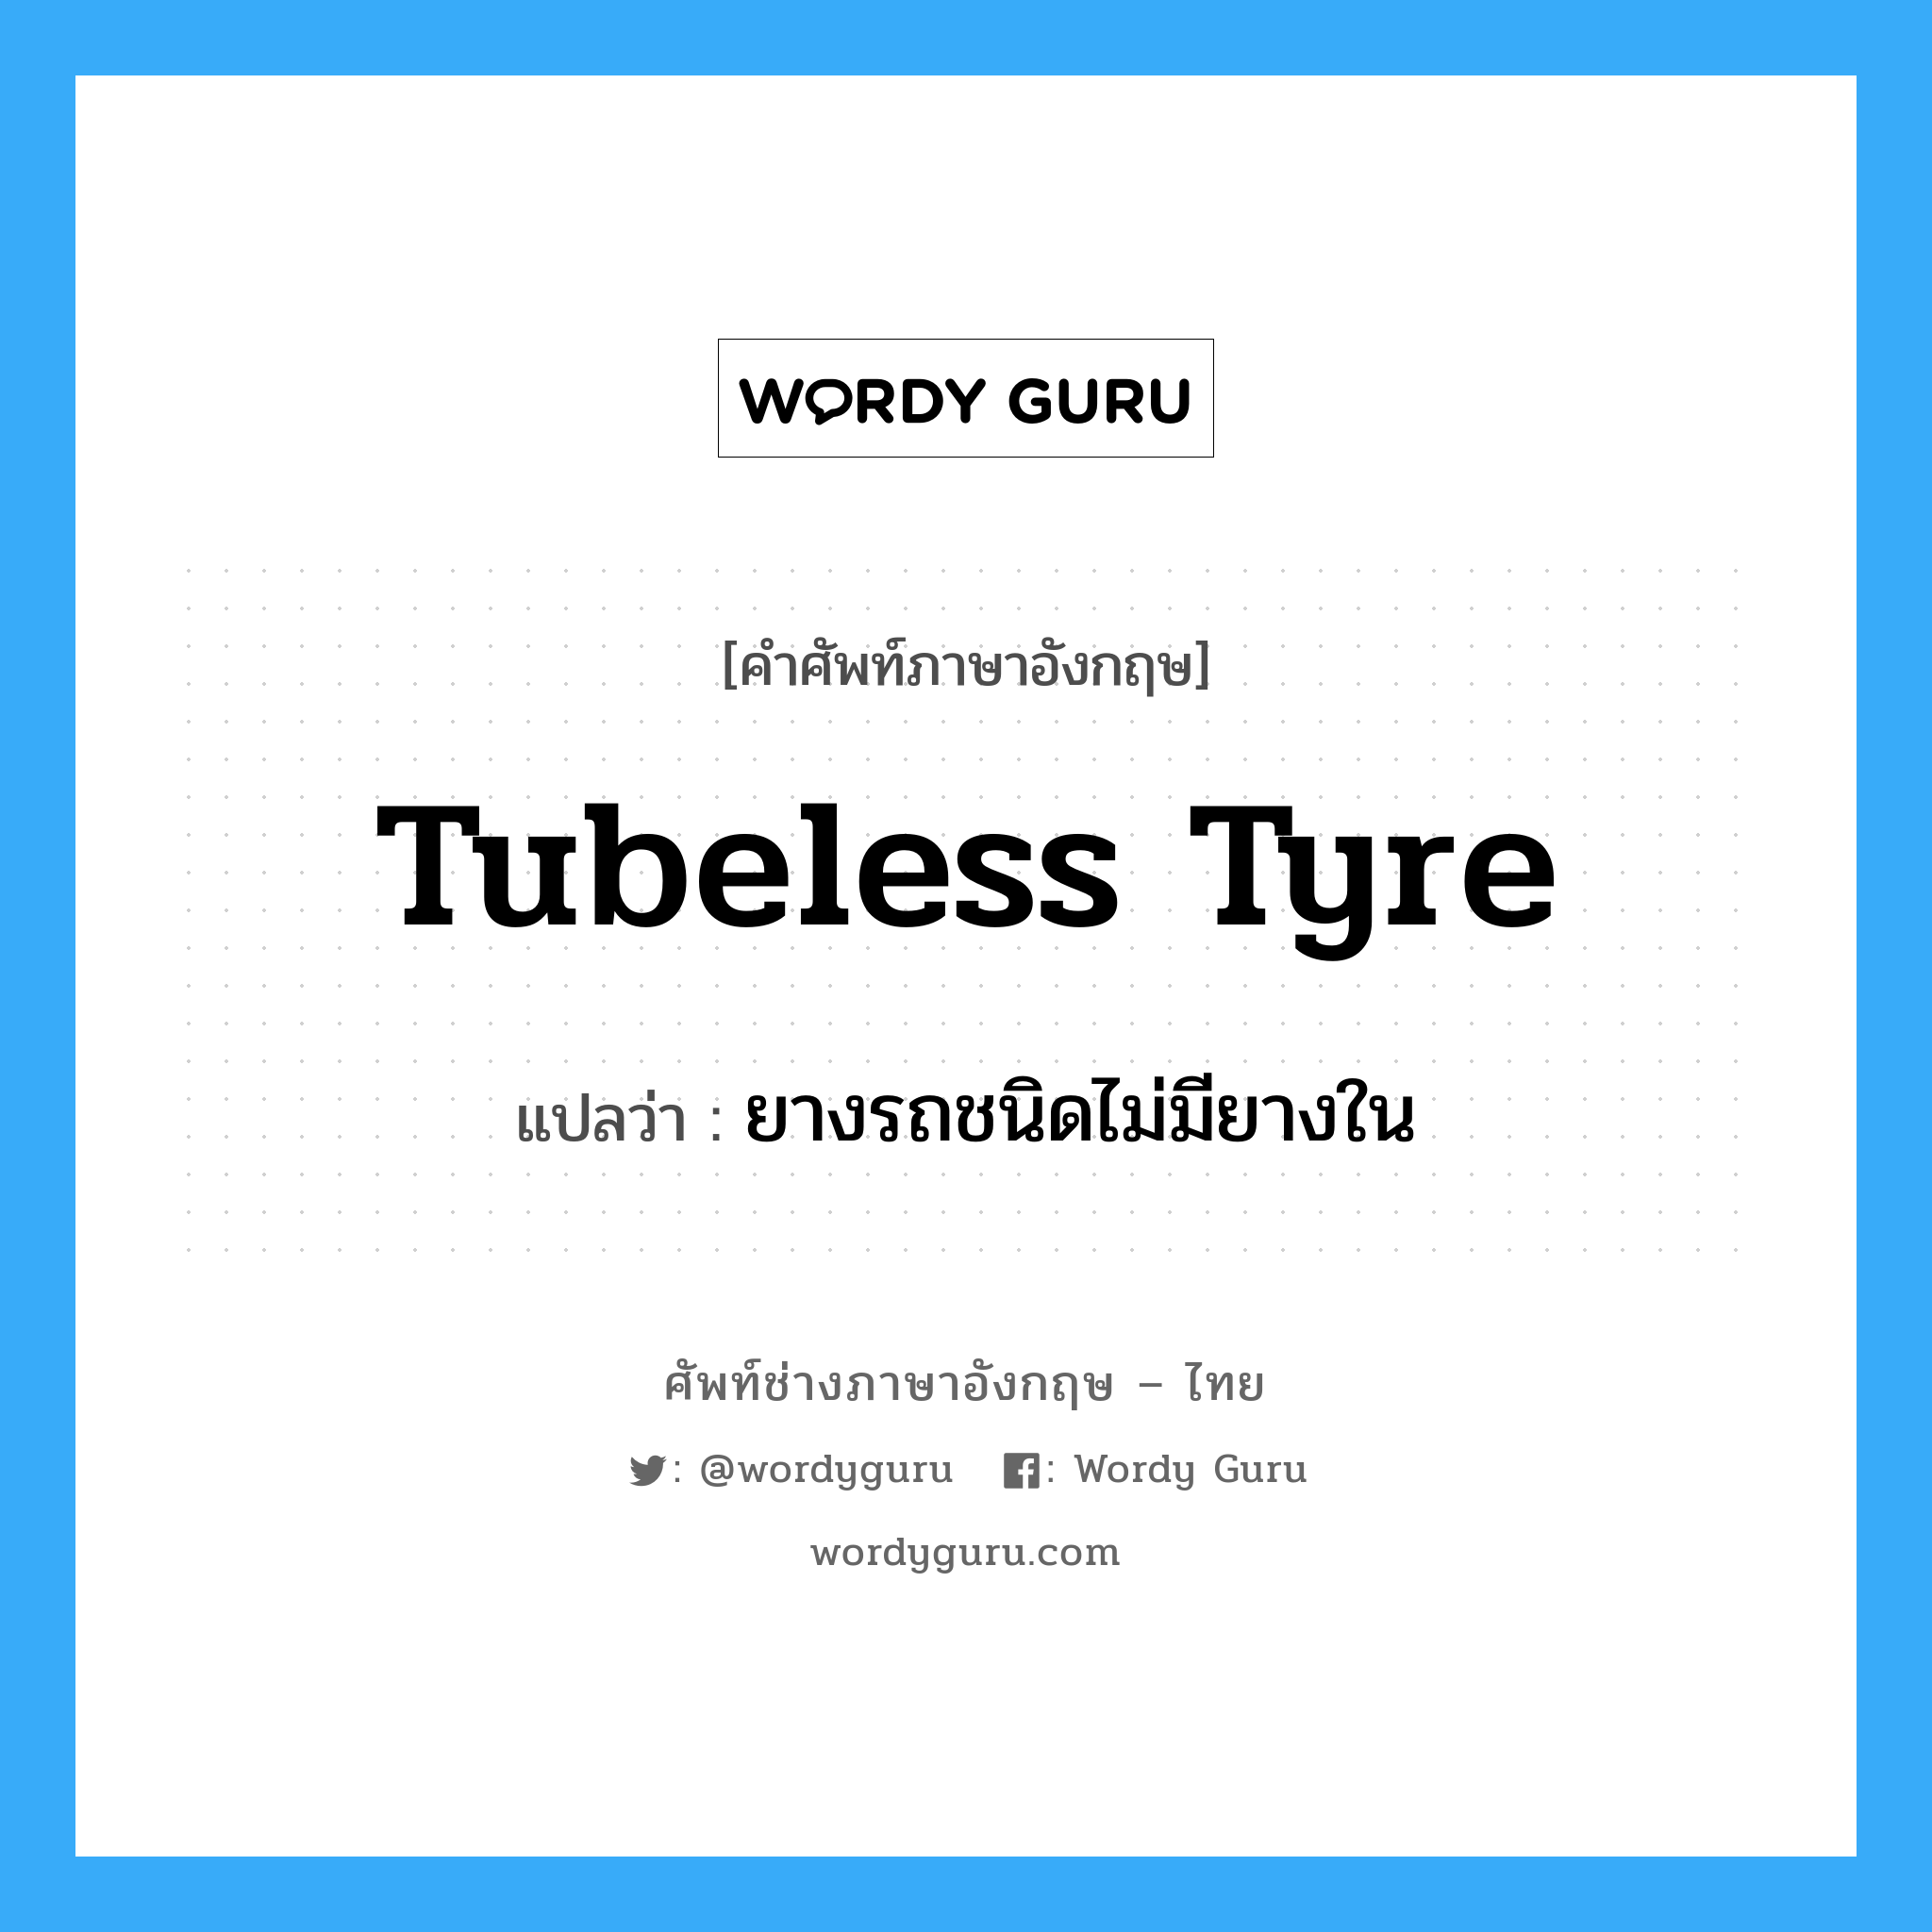 tubeless tyre แปลว่า?, คำศัพท์ช่างภาษาอังกฤษ - ไทย tubeless tyre คำศัพท์ภาษาอังกฤษ tubeless tyre แปลว่า ยางรถชนิดไม่มียางใน